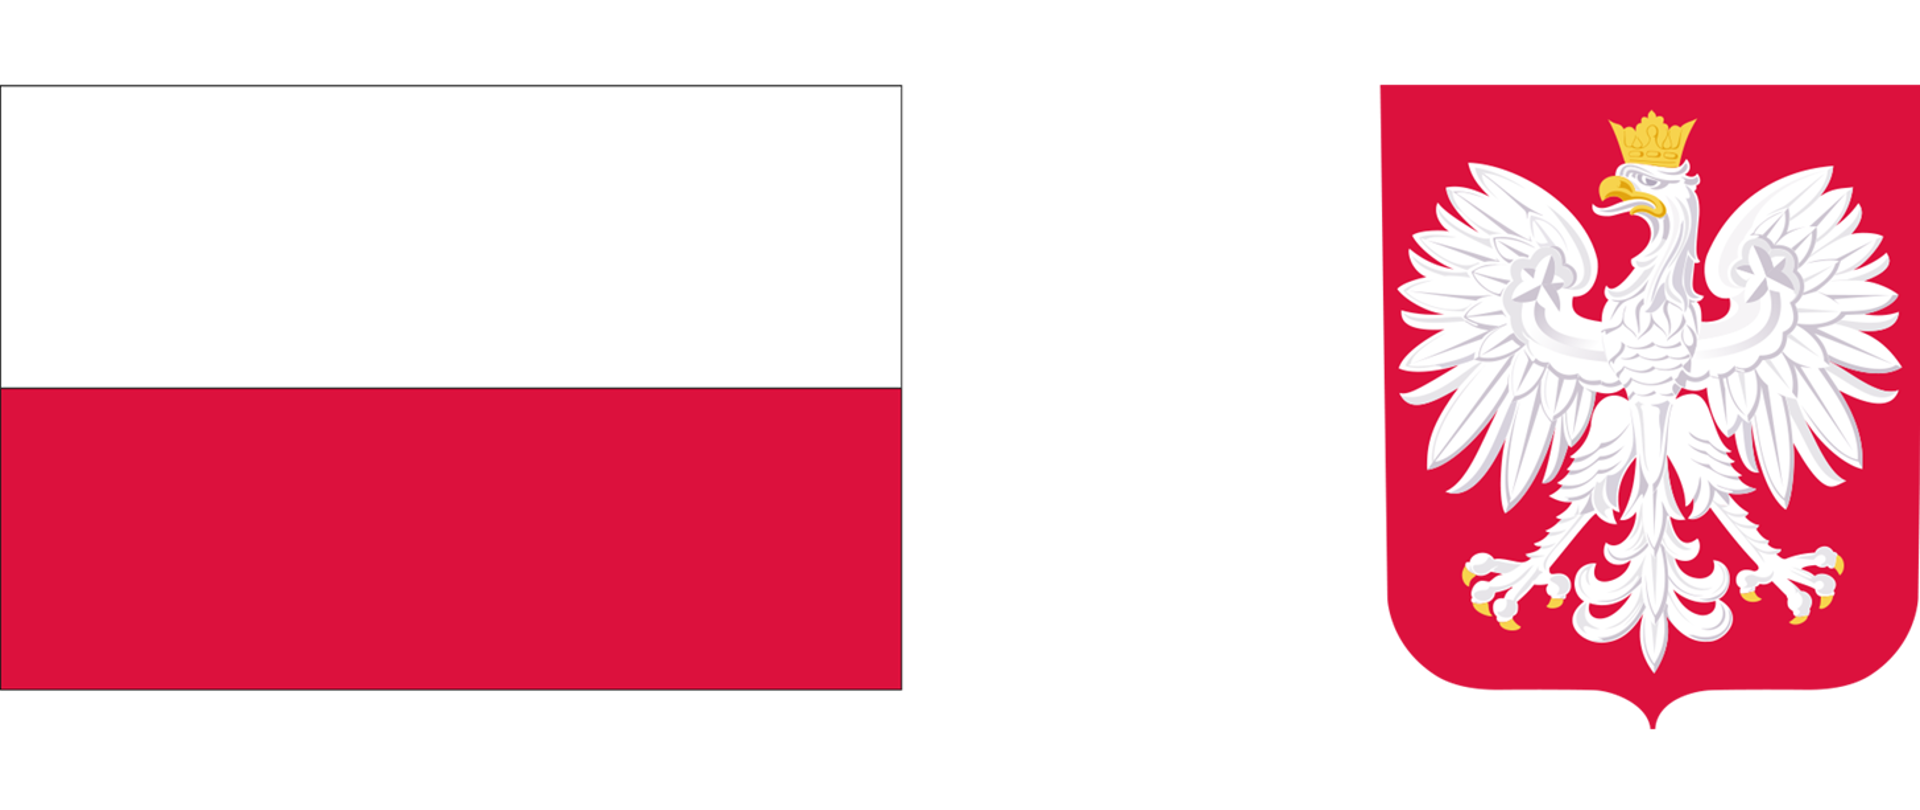 Grafika z polską flaga i polskim godłem